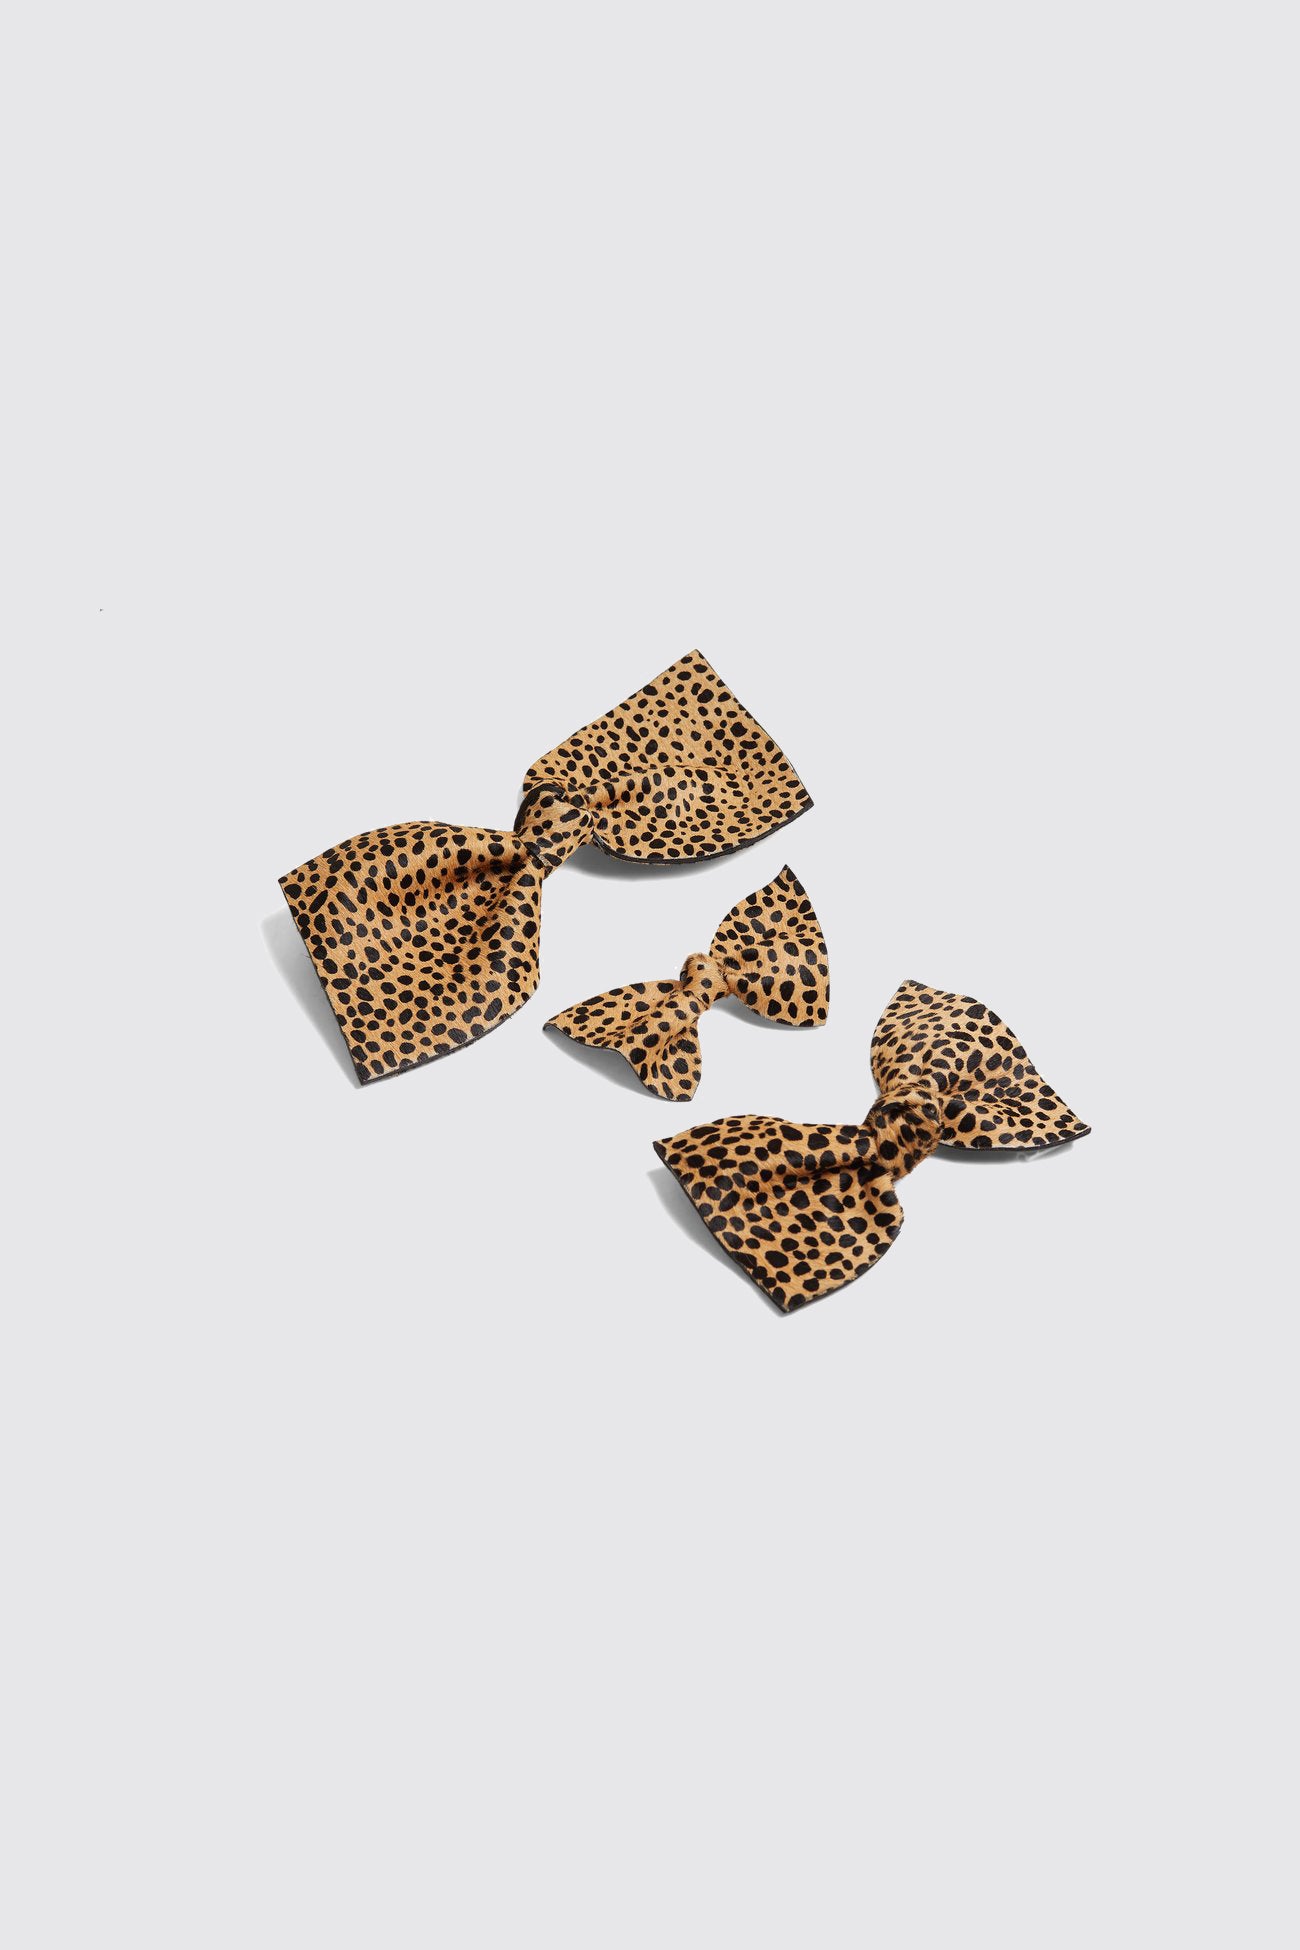 Mini hair clip in Cheetah printed leather